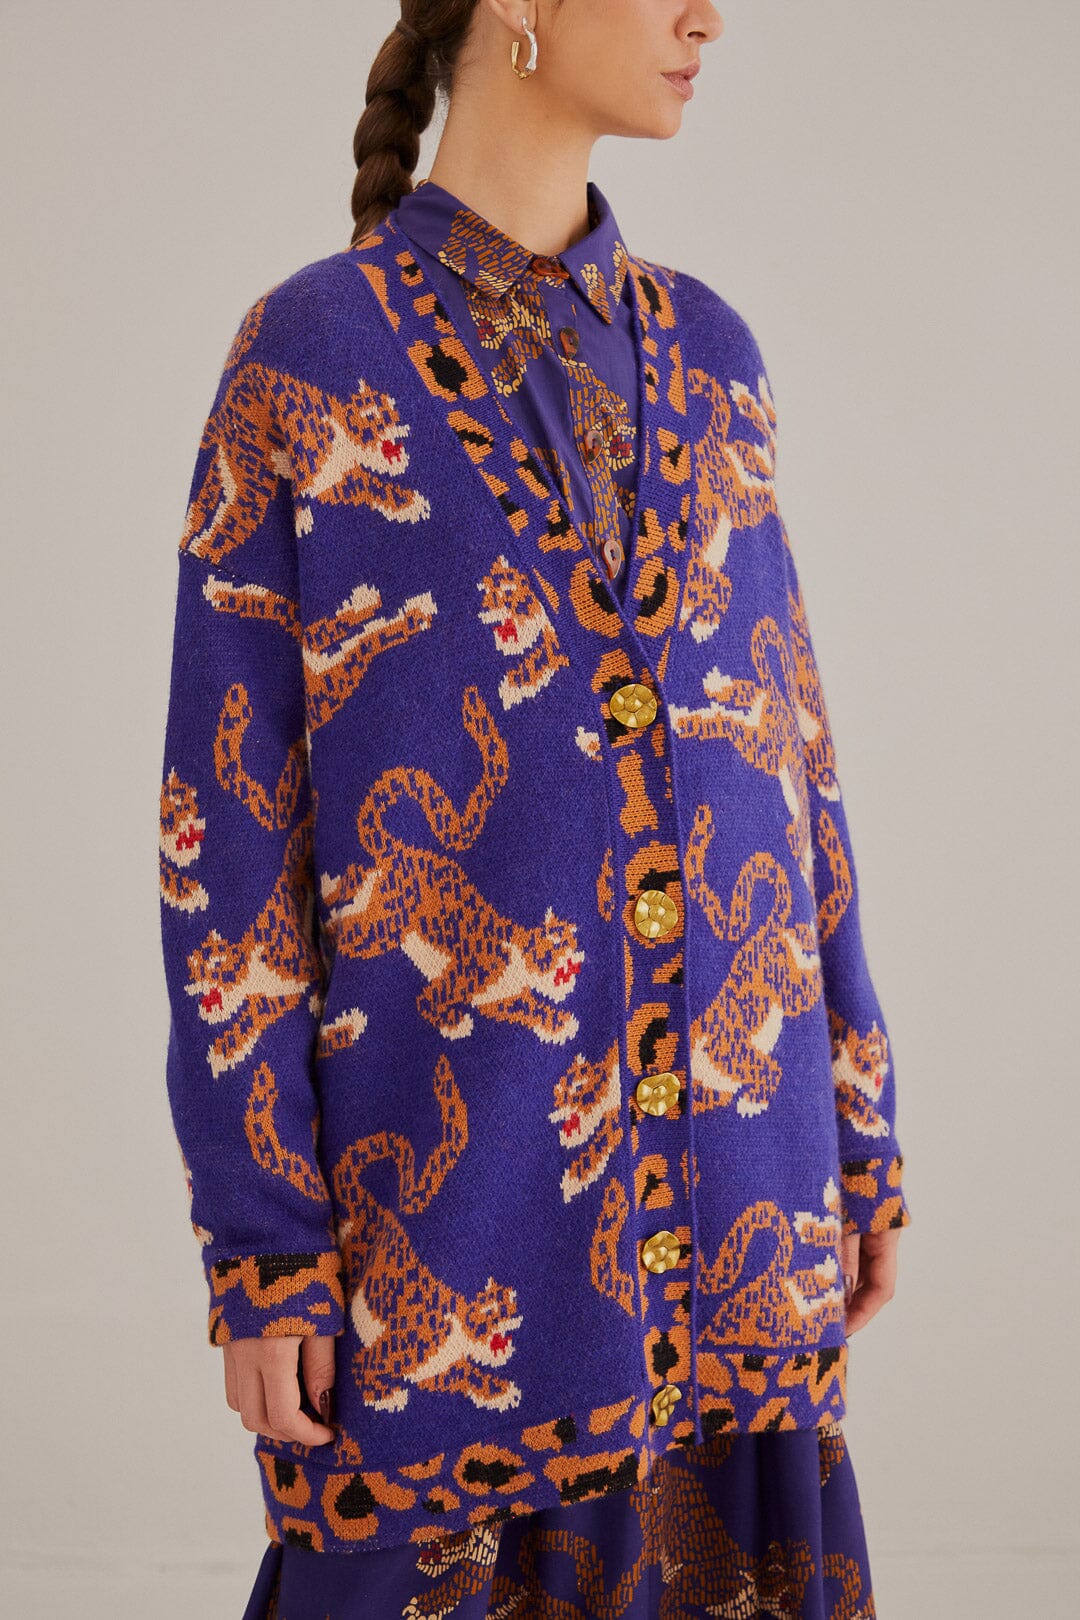 Navy Blue Leopards Knit Cardigan